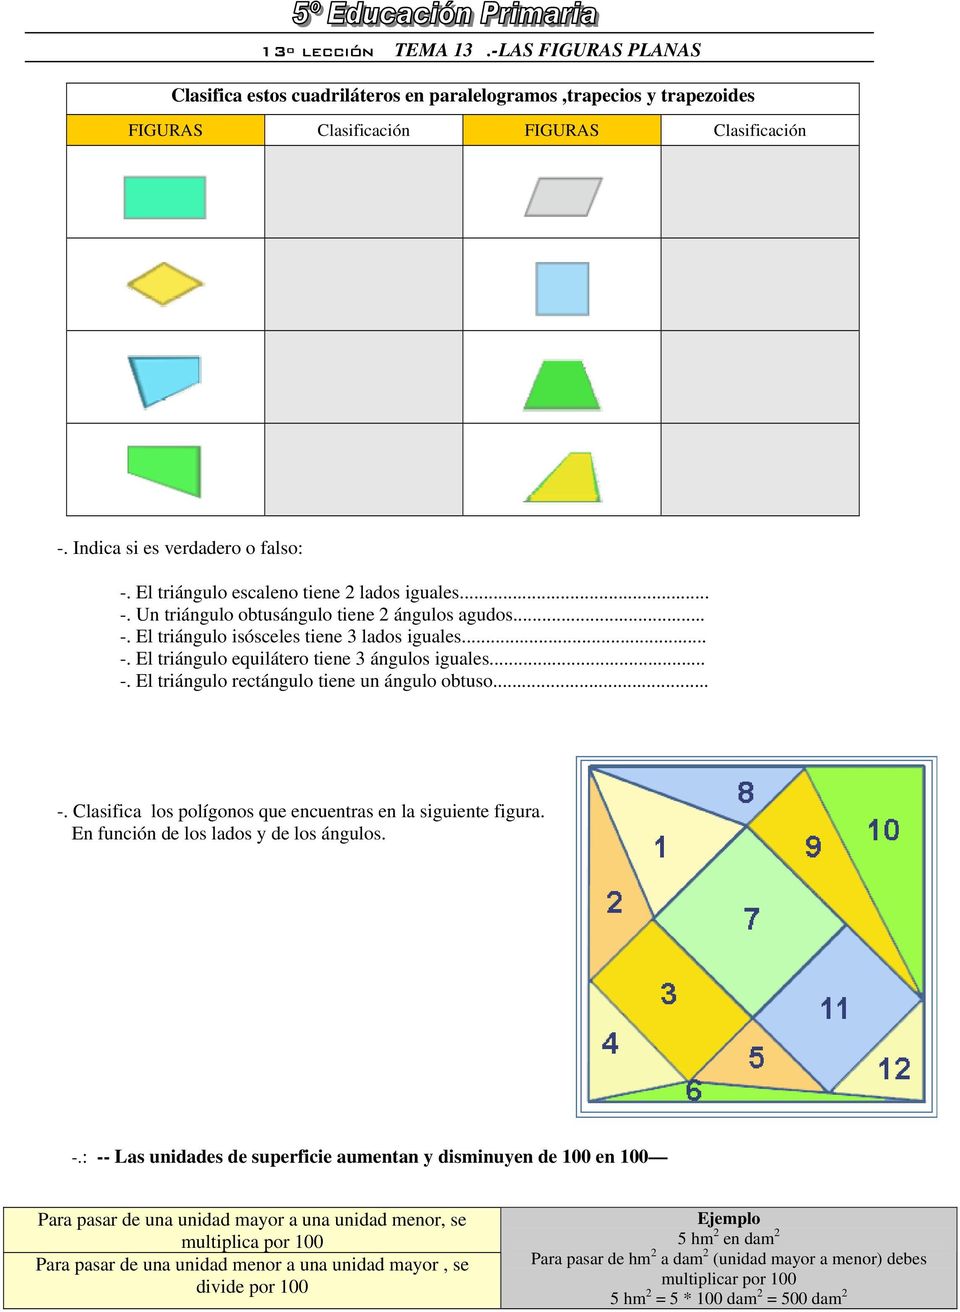 .. -. Clasifica los polígonos que encuentras en la siguiente figura. En función de los lados y de los ángulos. -.: -- Las unidades de superficie aumentan y disminuyen de 100 en 100 Para pasar de una